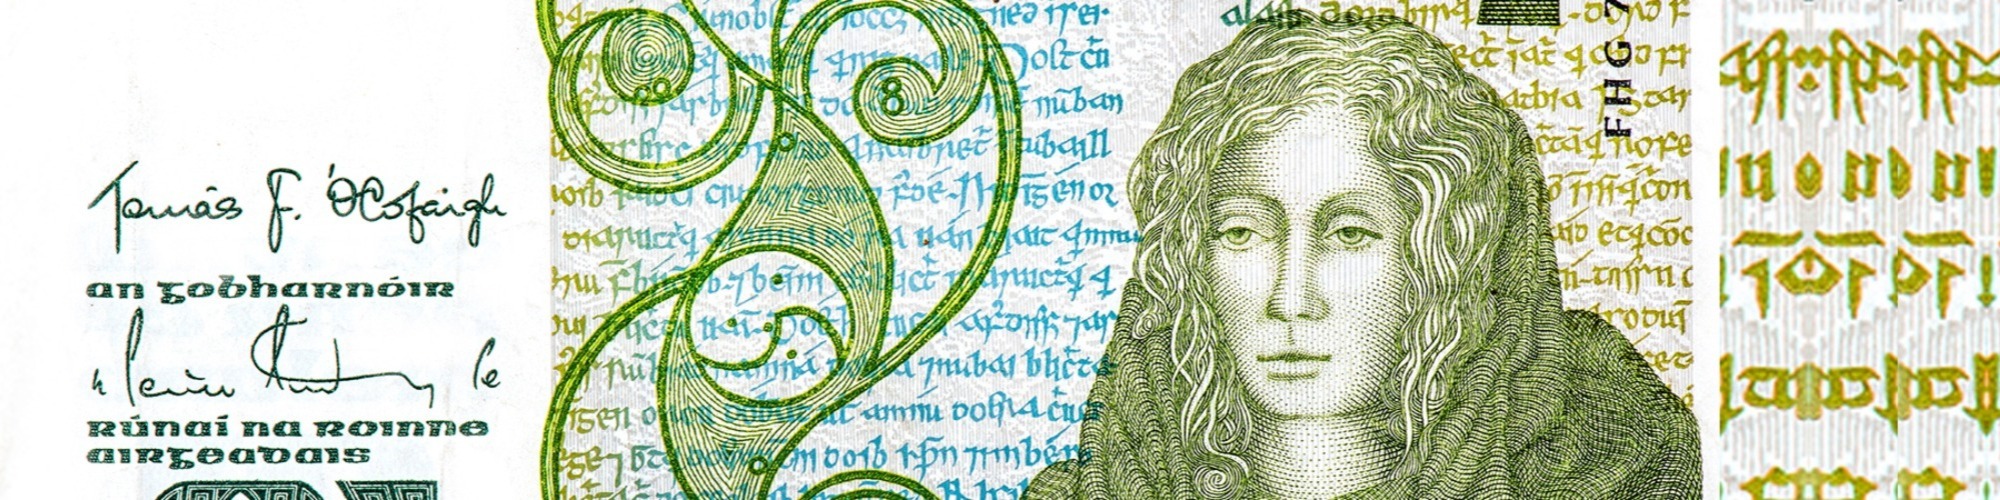 Queen Medb Banknote